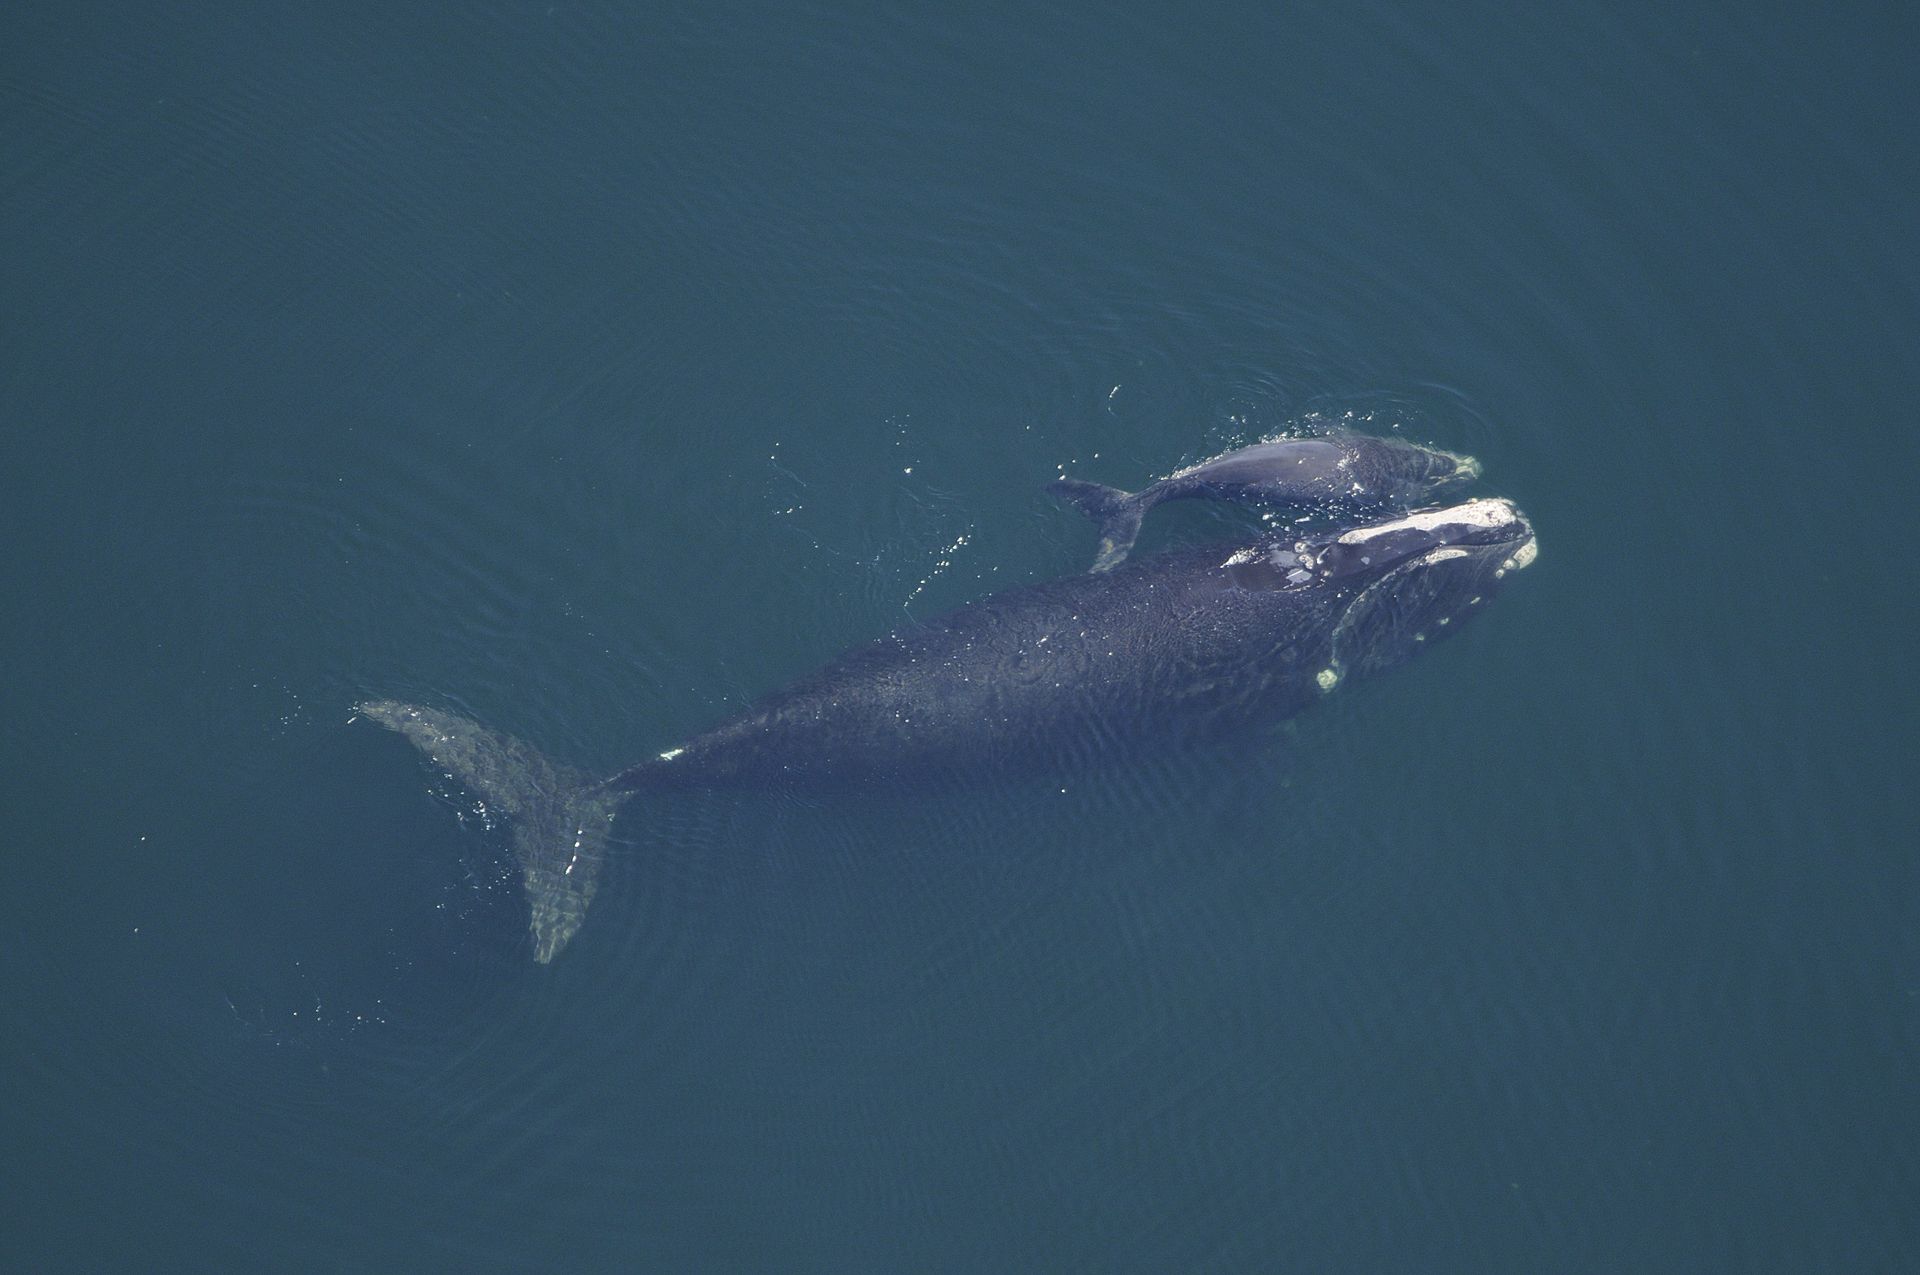 Mintegy tíz százalékkal csökkent tavaly az egyik legritkább tengeri emlősfaj populációja